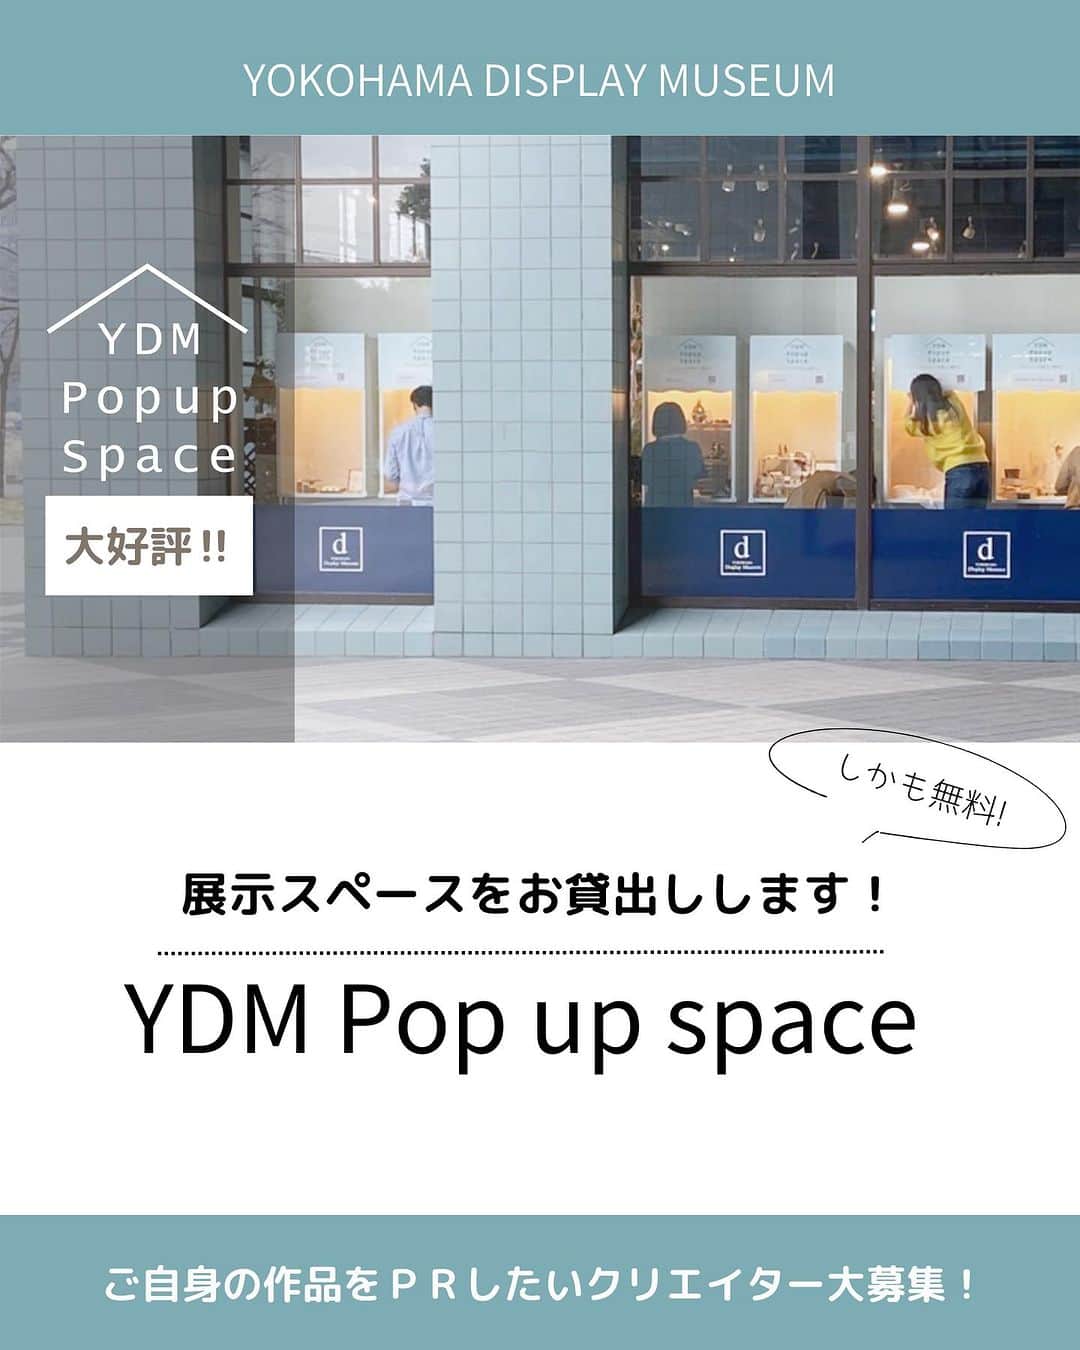 横浜ディスプレイミュージアムのインスタグラム：「【YDM Popup Space】  作品をＰＲしたいクリエイターを大募集！  手仕事を愛するクリエイターの 心のこもった作品を たくさんの方にご紹介できる機会を 作りたいという想いから始まった YDMポップアップスペース  以前は期間限定の開催でしたが この度、新たに展示場所を作成し 常設での展示をすることになりました！ （年4回入れ替え予定）  国内最大級の雑貨・資材問屋である横浜ディスプレイミュージアム 一般店舗とは違い業者様が多く集まる場所でもあります😊  中にはスタイリストや雑貨ショップオーナーなども ご来店されますので新たな販路に繋がる可能性も👍  また、今回から「グッズ部門」「リース部門」の 2部門の募集をいたします♪  グッズ部門は本店ラウンジ内部に新しく設置した 展示什器にジャンル問わず クリエイターの作品を展示いただけます。 ( 定員10名）  リース部門では本店2階の渡り廊下にあるガラスショーケースに お作りいただいたリースを展示いたします。 フラワーアレンジ以外のリースも大歓迎！ (定員12名）  展示スペースにはショップ名と ネットショップ・インスタグラムの ＱＲコードをボードに印刷し 設置させていただきます。  そして更に！ ご参加いただいたクリエイターを 紹介するチラシを弊社で作成し 当店でお買い物いただいたお客様に お配りさせていただきます😊 こちらは今回からの試み💪  横浜ディスプレイミュージアムは クリエイターの活動を応援いたします✨  こちらは弊社業務会員様のみの特典です 奮ってご応募くださいませ♪  今回の展示枠の募集期間は（8/10～8/20）まで詳しくは ＨＰピックアップよりご確認ください✨  @yokohamadisplaymuseum  .  ディスプレイスタイリング専門アカウント  @ydm_deco.styling  :  フェイクグリーンスタイリング専門アカウント  @ydm_fakegreen.styling  :  アーティフィシャルフラワー専門アカウント  @ydmarrangementline  :  横浜ディスプレイミュージアム公式  ディスプレイ専門アカデミー  @jdca_school  プチプチハッピープラス  株式会社ポピーが運営♪  全国の100円ショップで展開中♪  @puchihapi  #横浜ディスプレイミュージアム #ydmポップアップスペース#フラワーアレンジ#ハンドメイド作家さんと繋がりたい#ハンドメイド#ハンドメイド作家#手仕事が好き #ハンドメイドマルシェ」